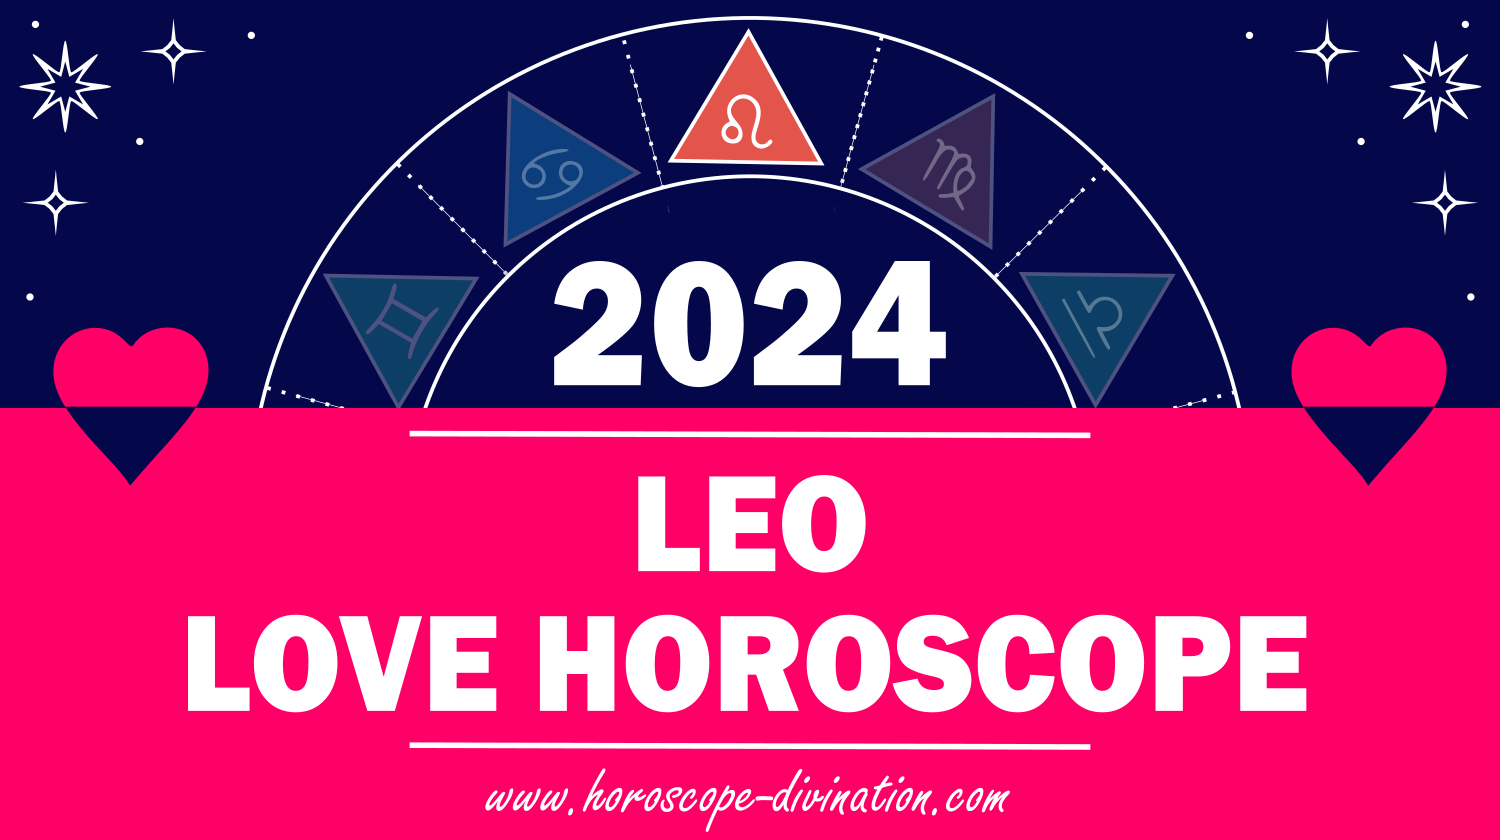 Leo Love Horoscope 2024 